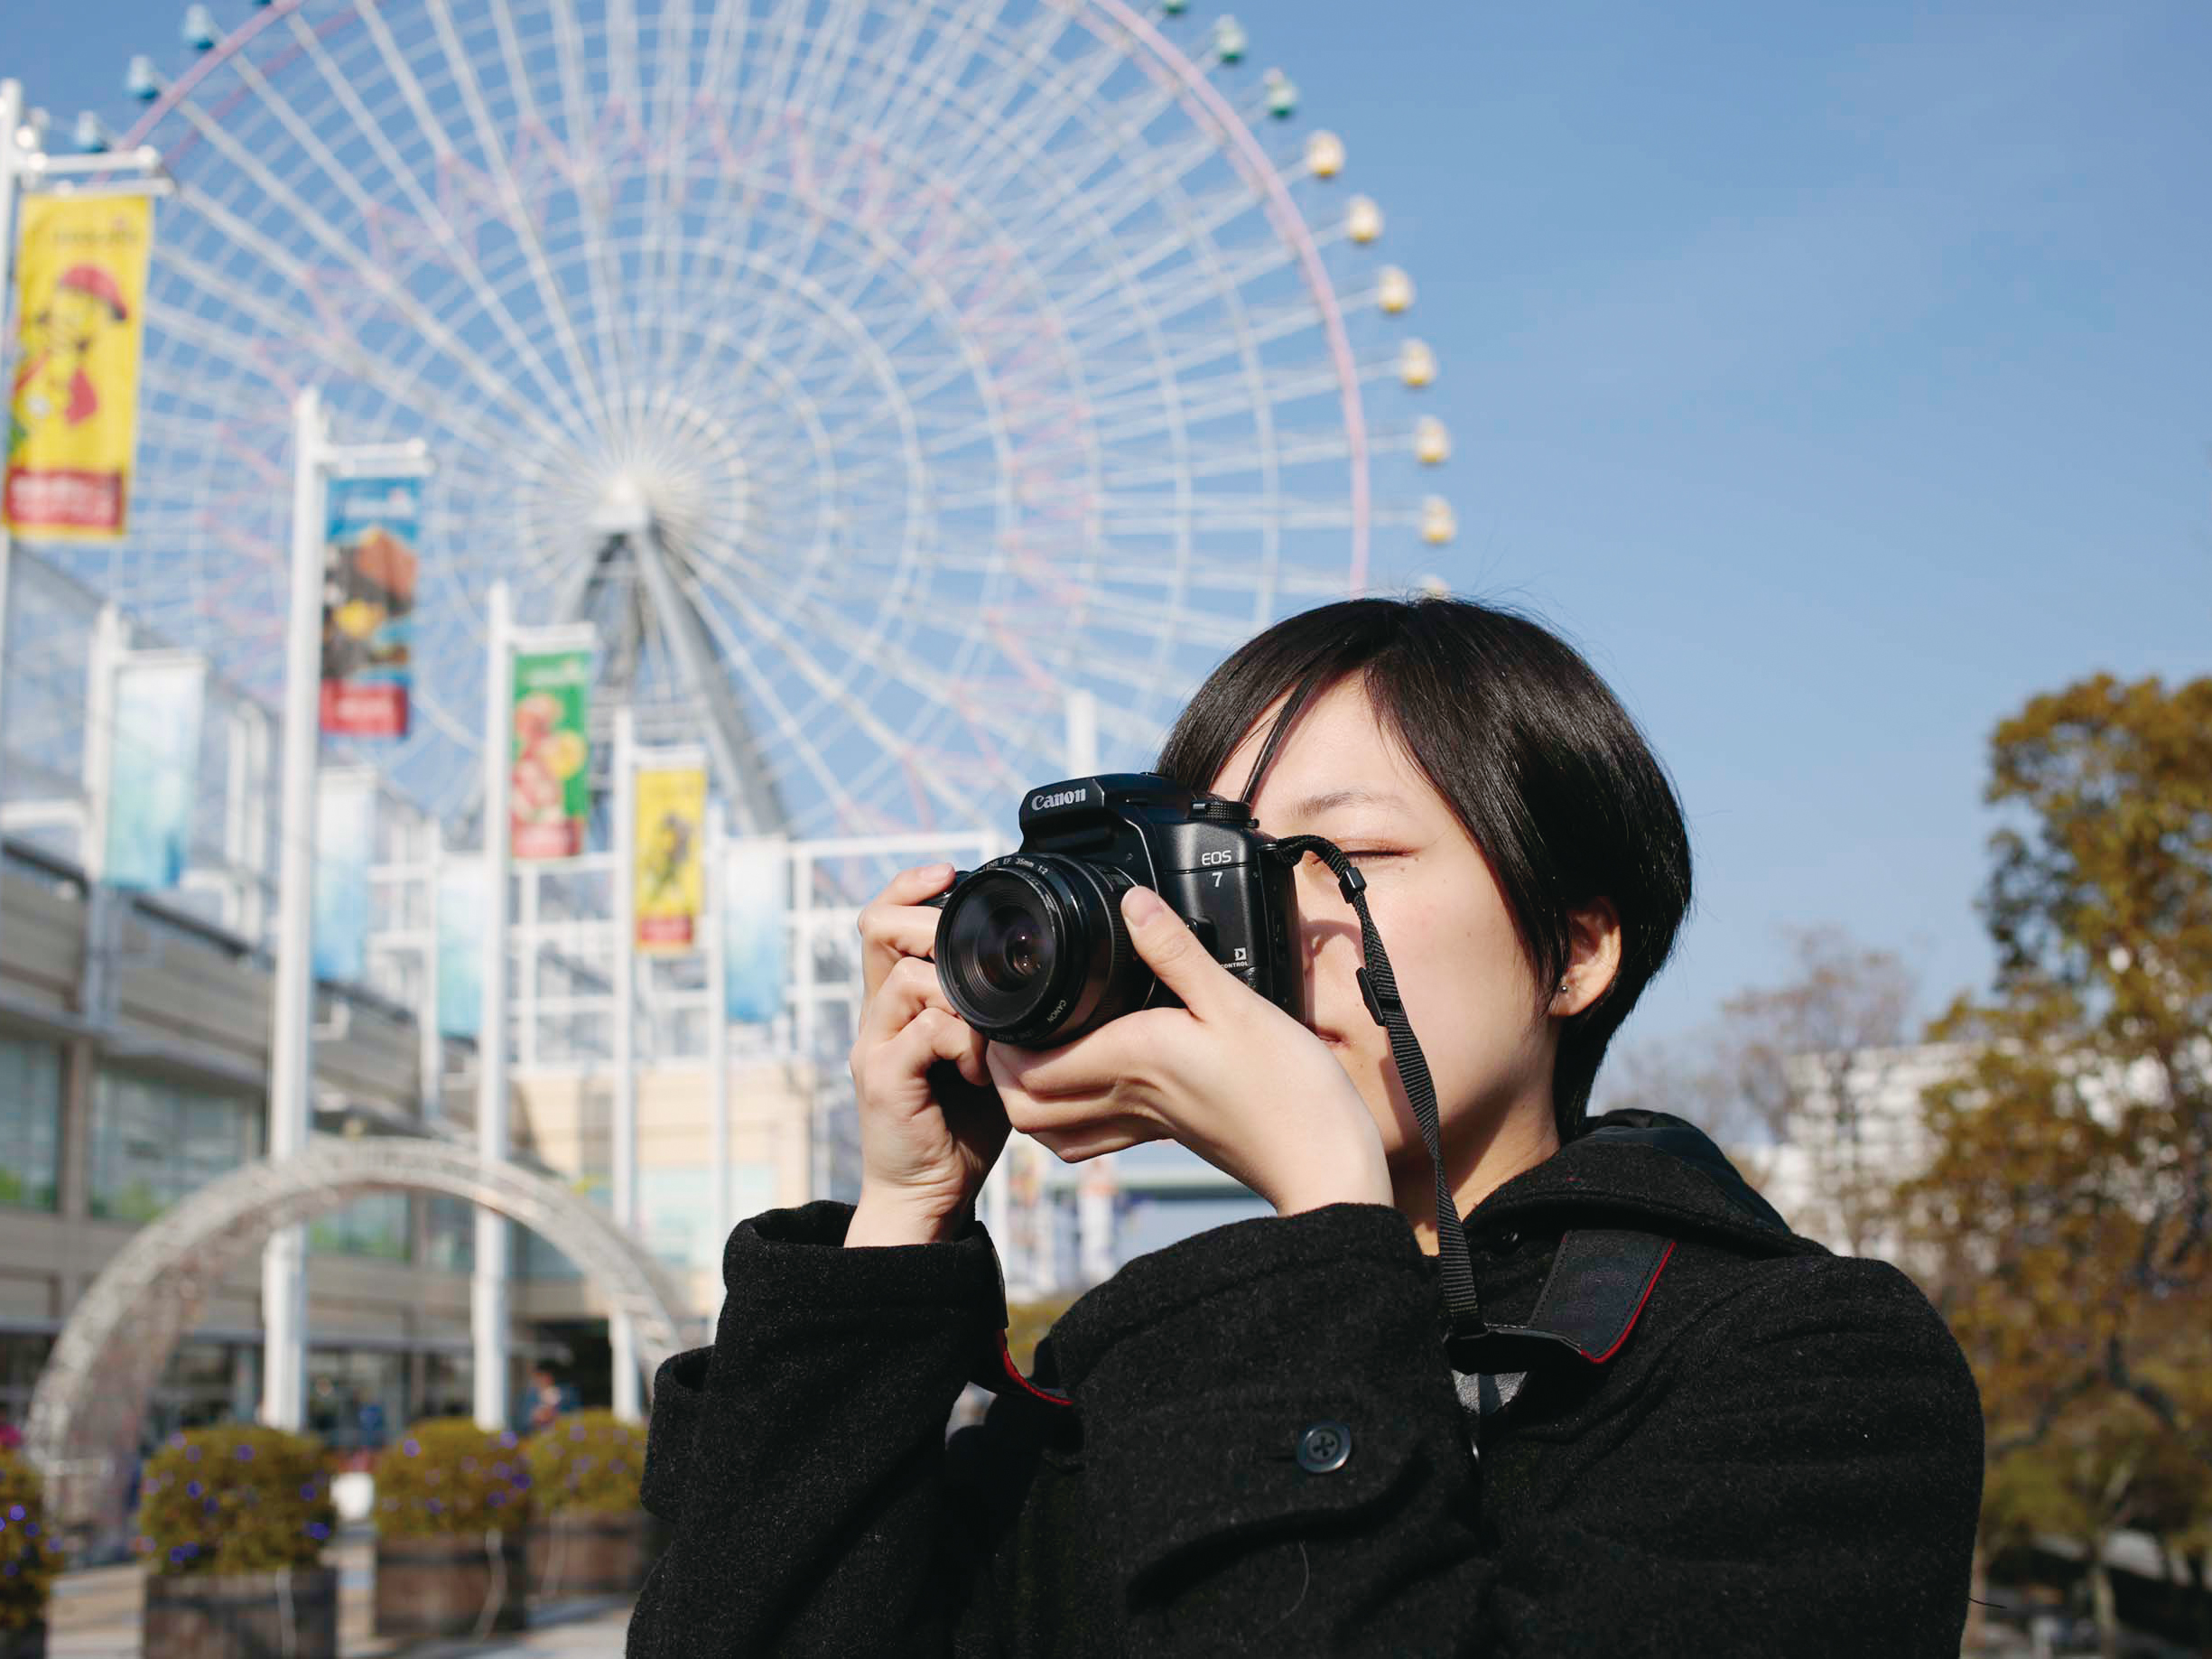 オープンキャンパス ビジュアルアーツ専門学校 大阪 G 39 初めての一眼レフカメラ